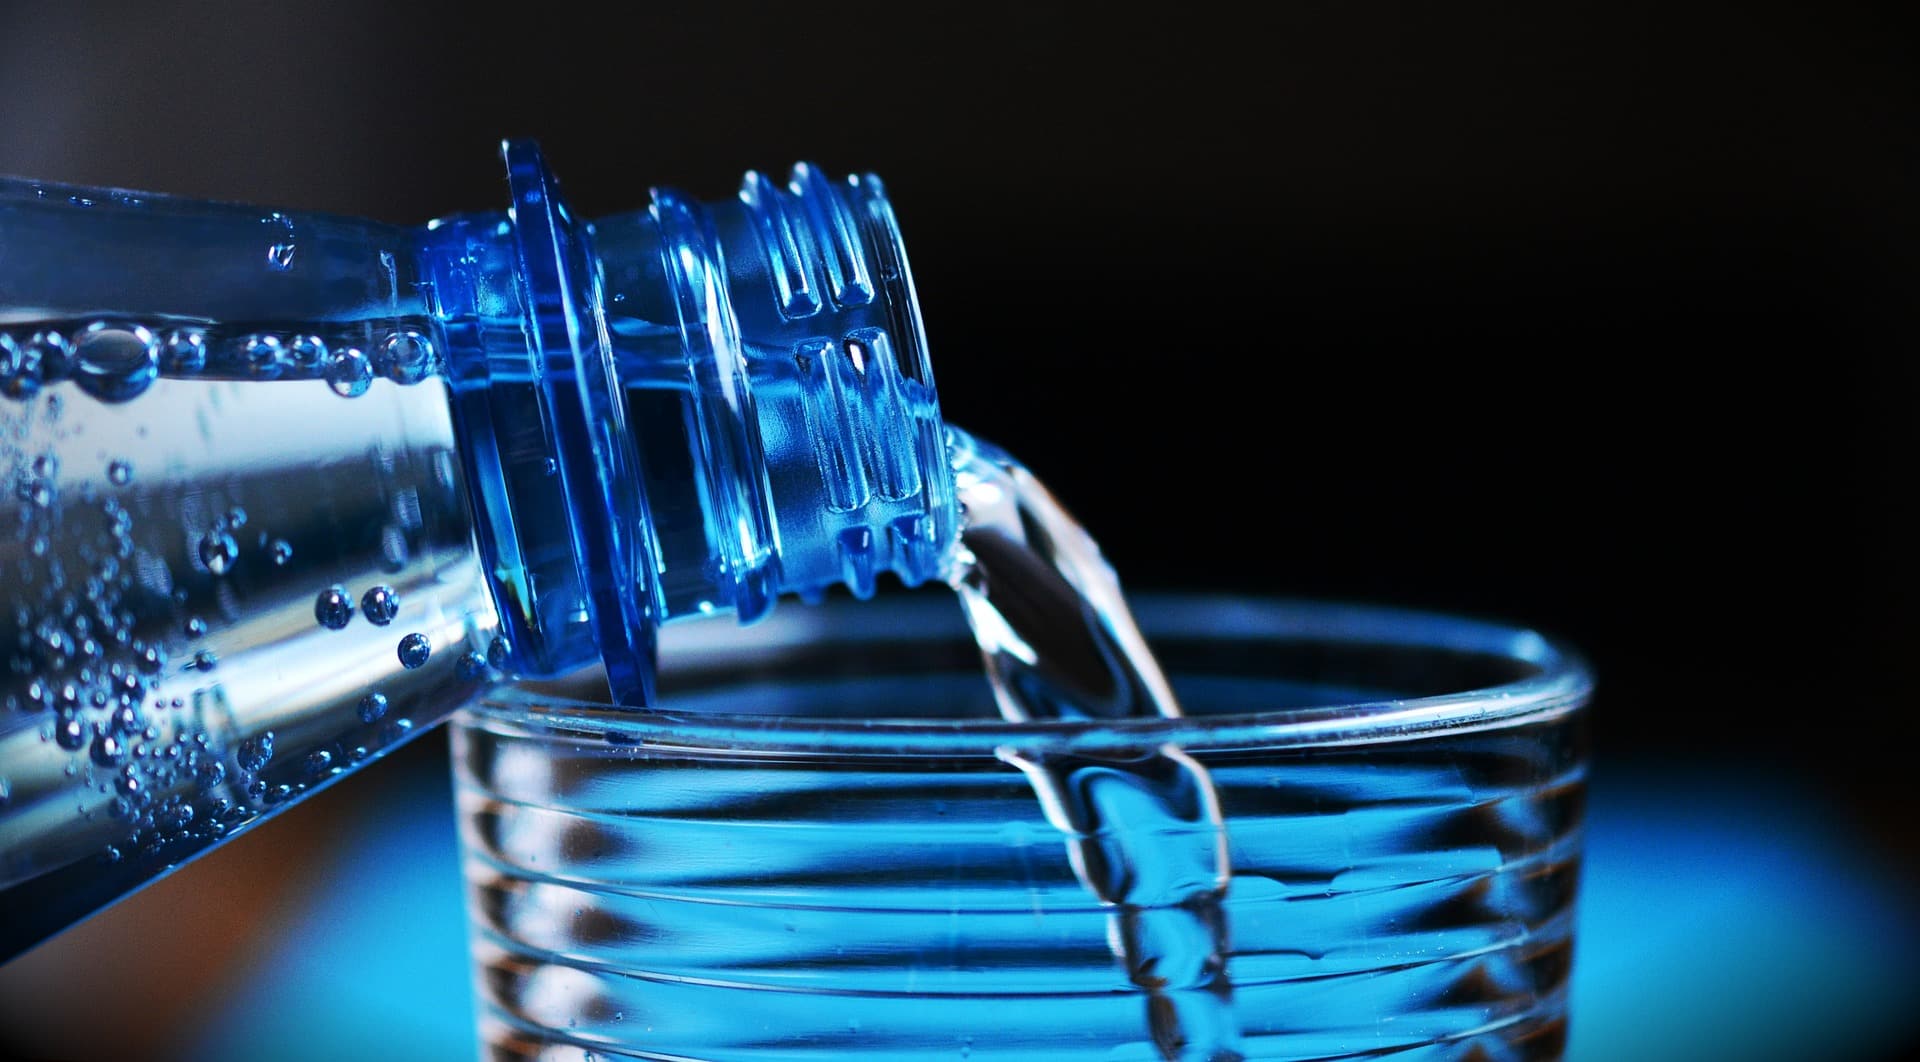 Beber muita água pode matar?